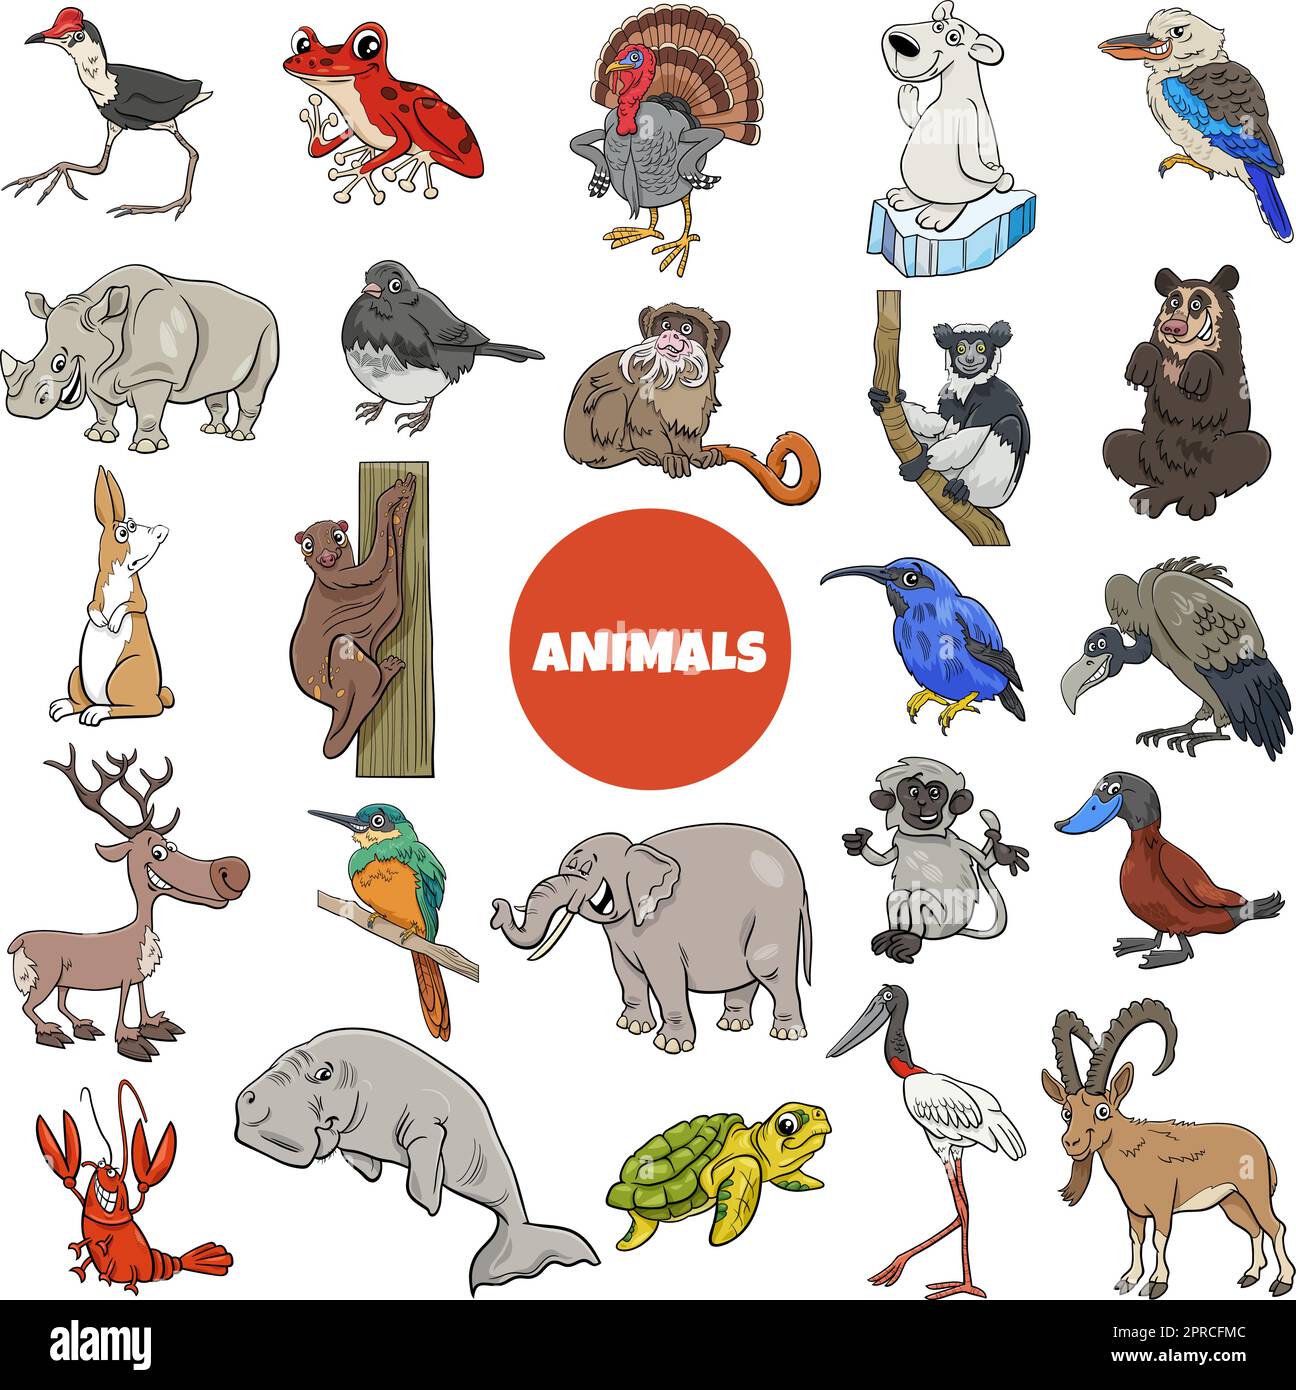 cartoon wild animal species characters big set Stock Vector